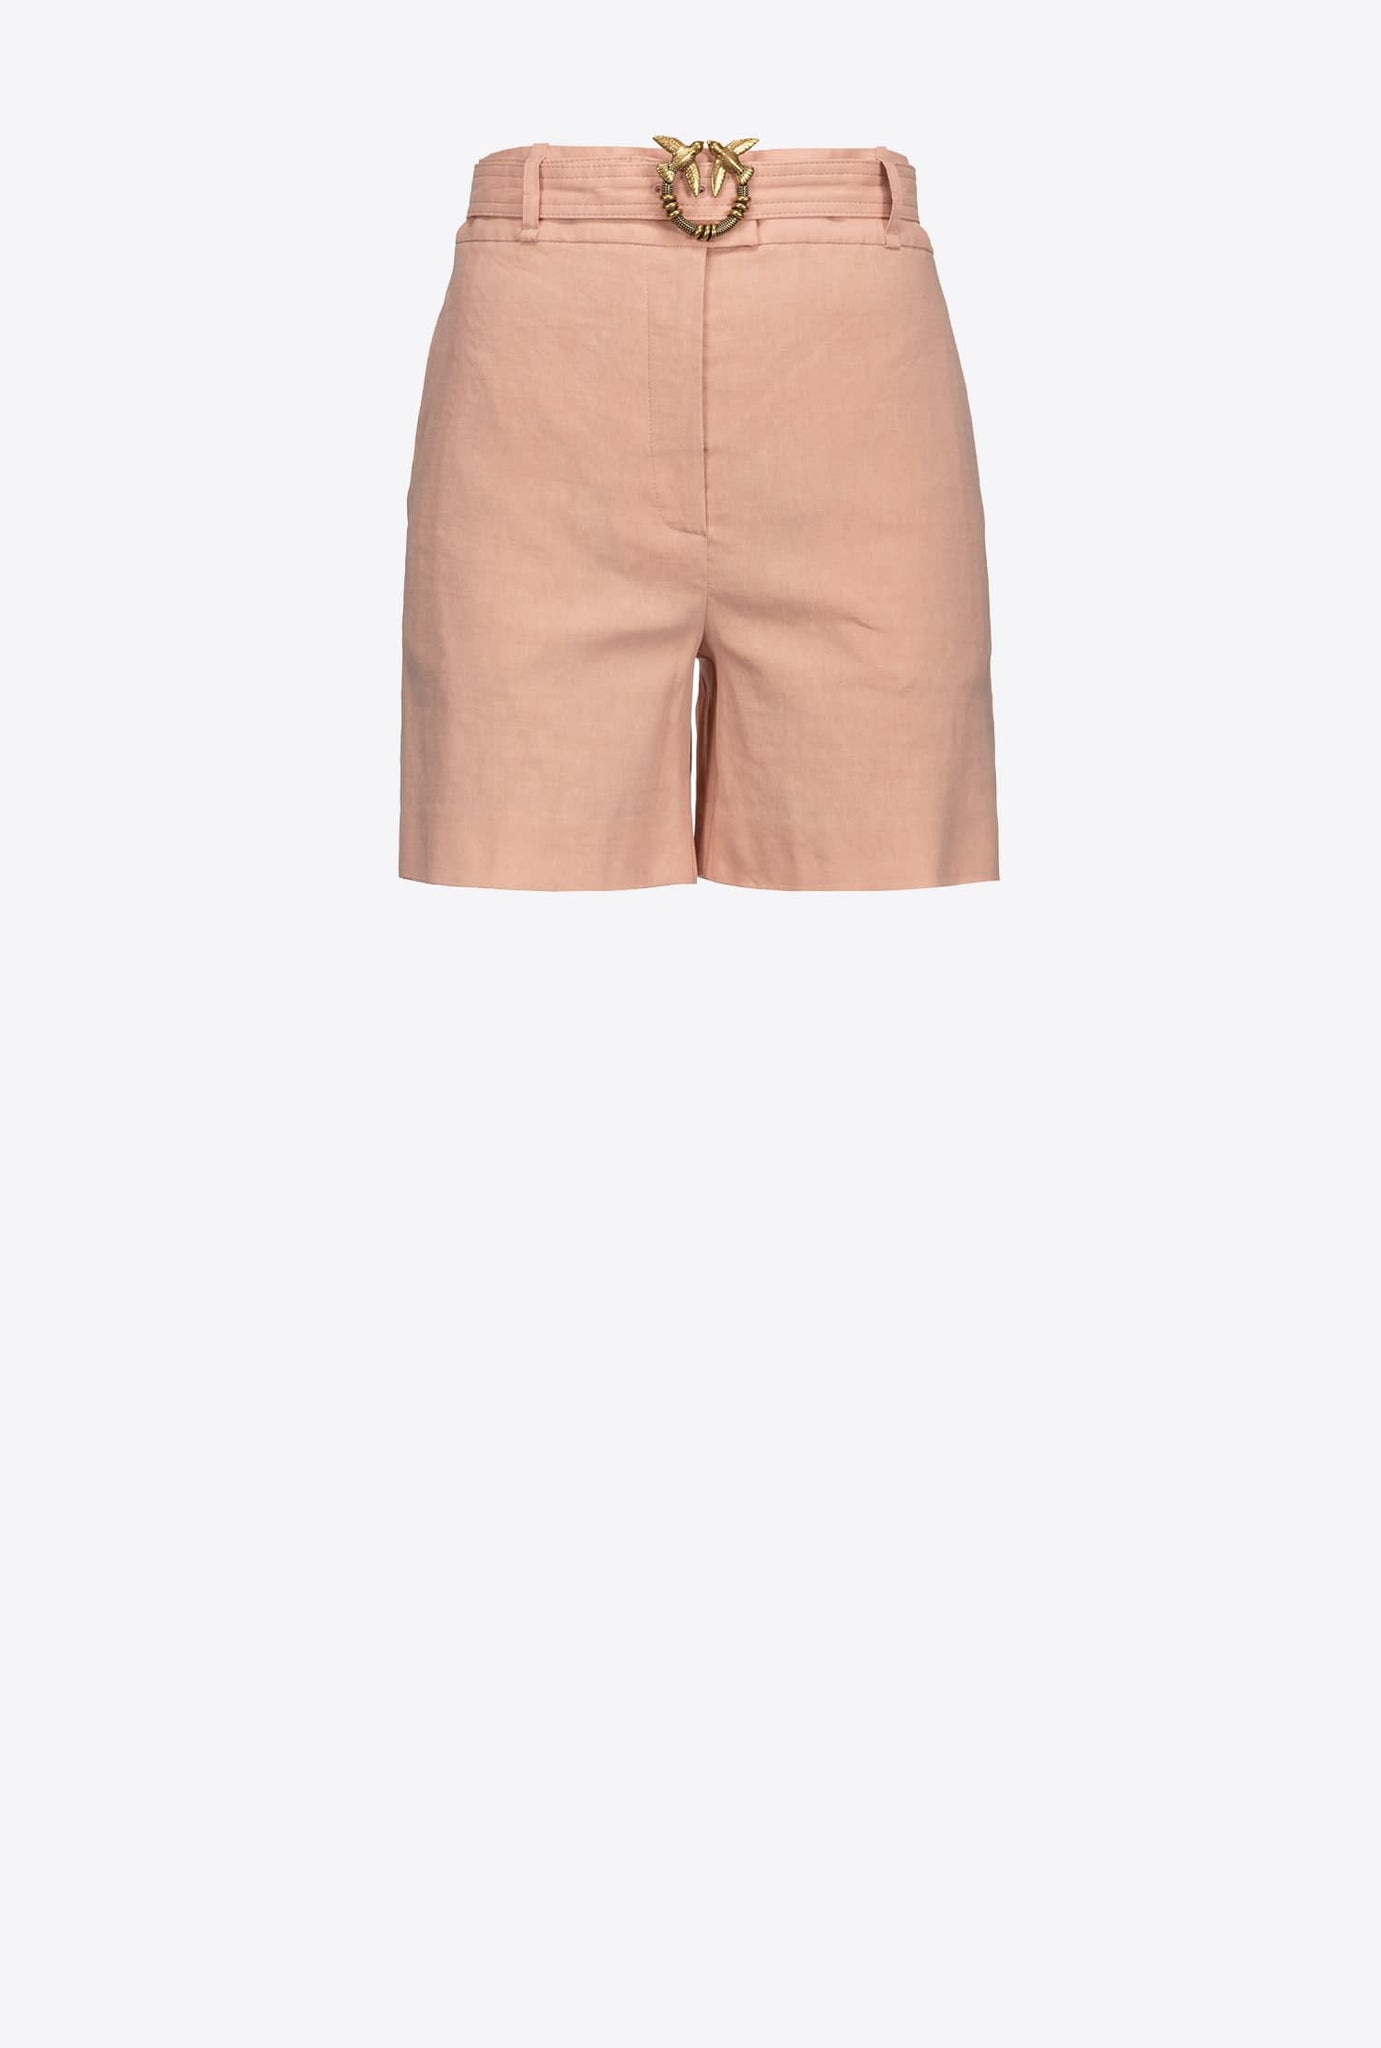 Pantaloncino Pinko con Cintura / Rosa - Ideal Moda